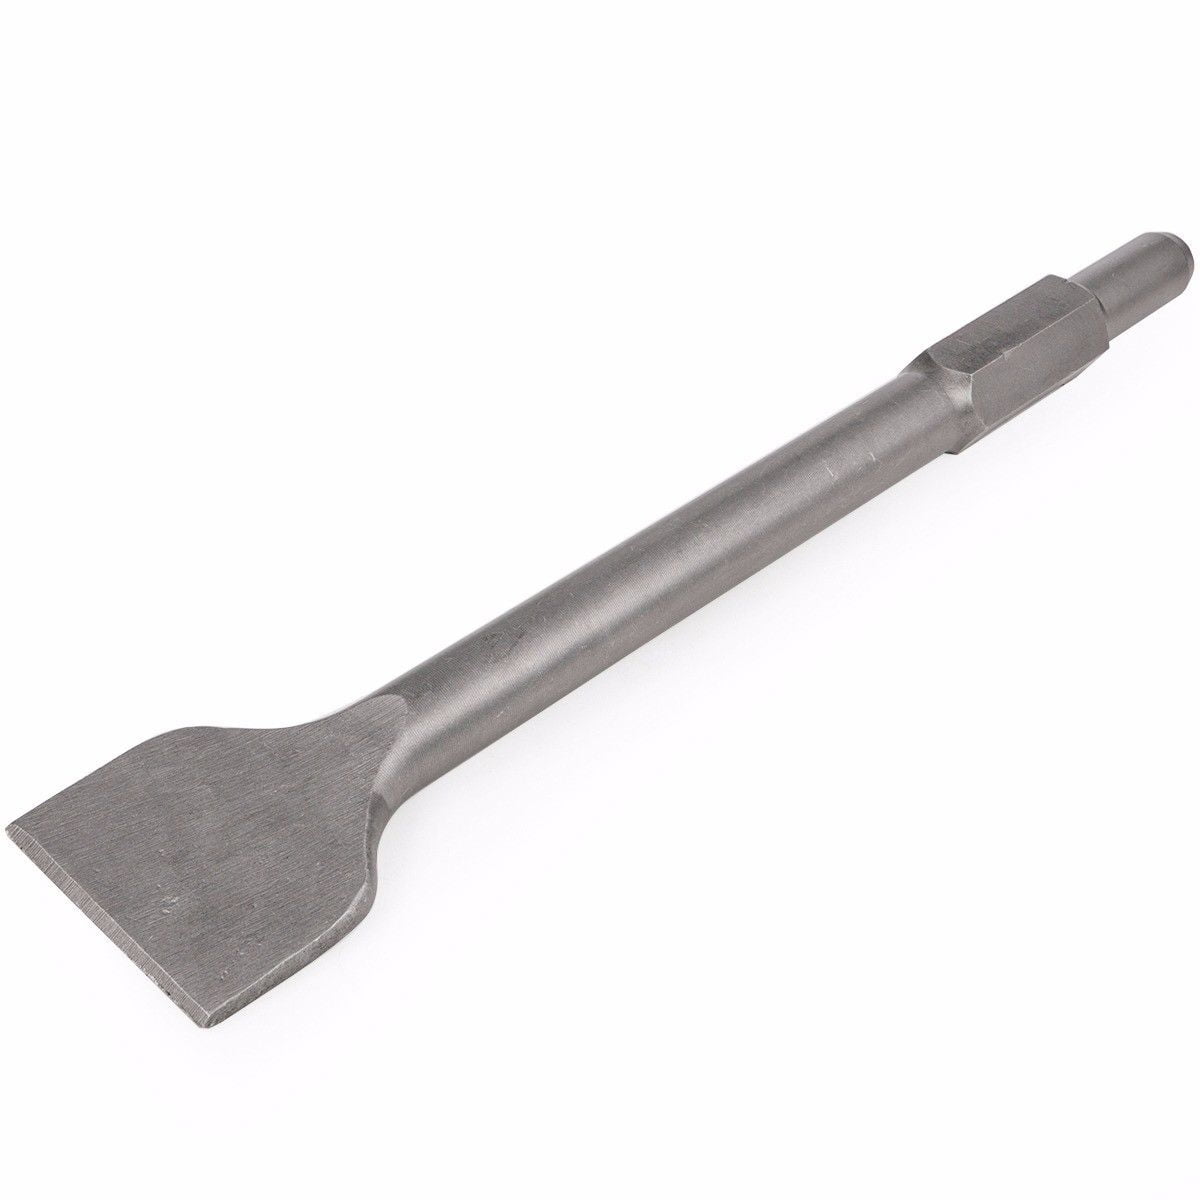 2 Inch chisel bit for demolition demo jack hammer tool 2"x12" 